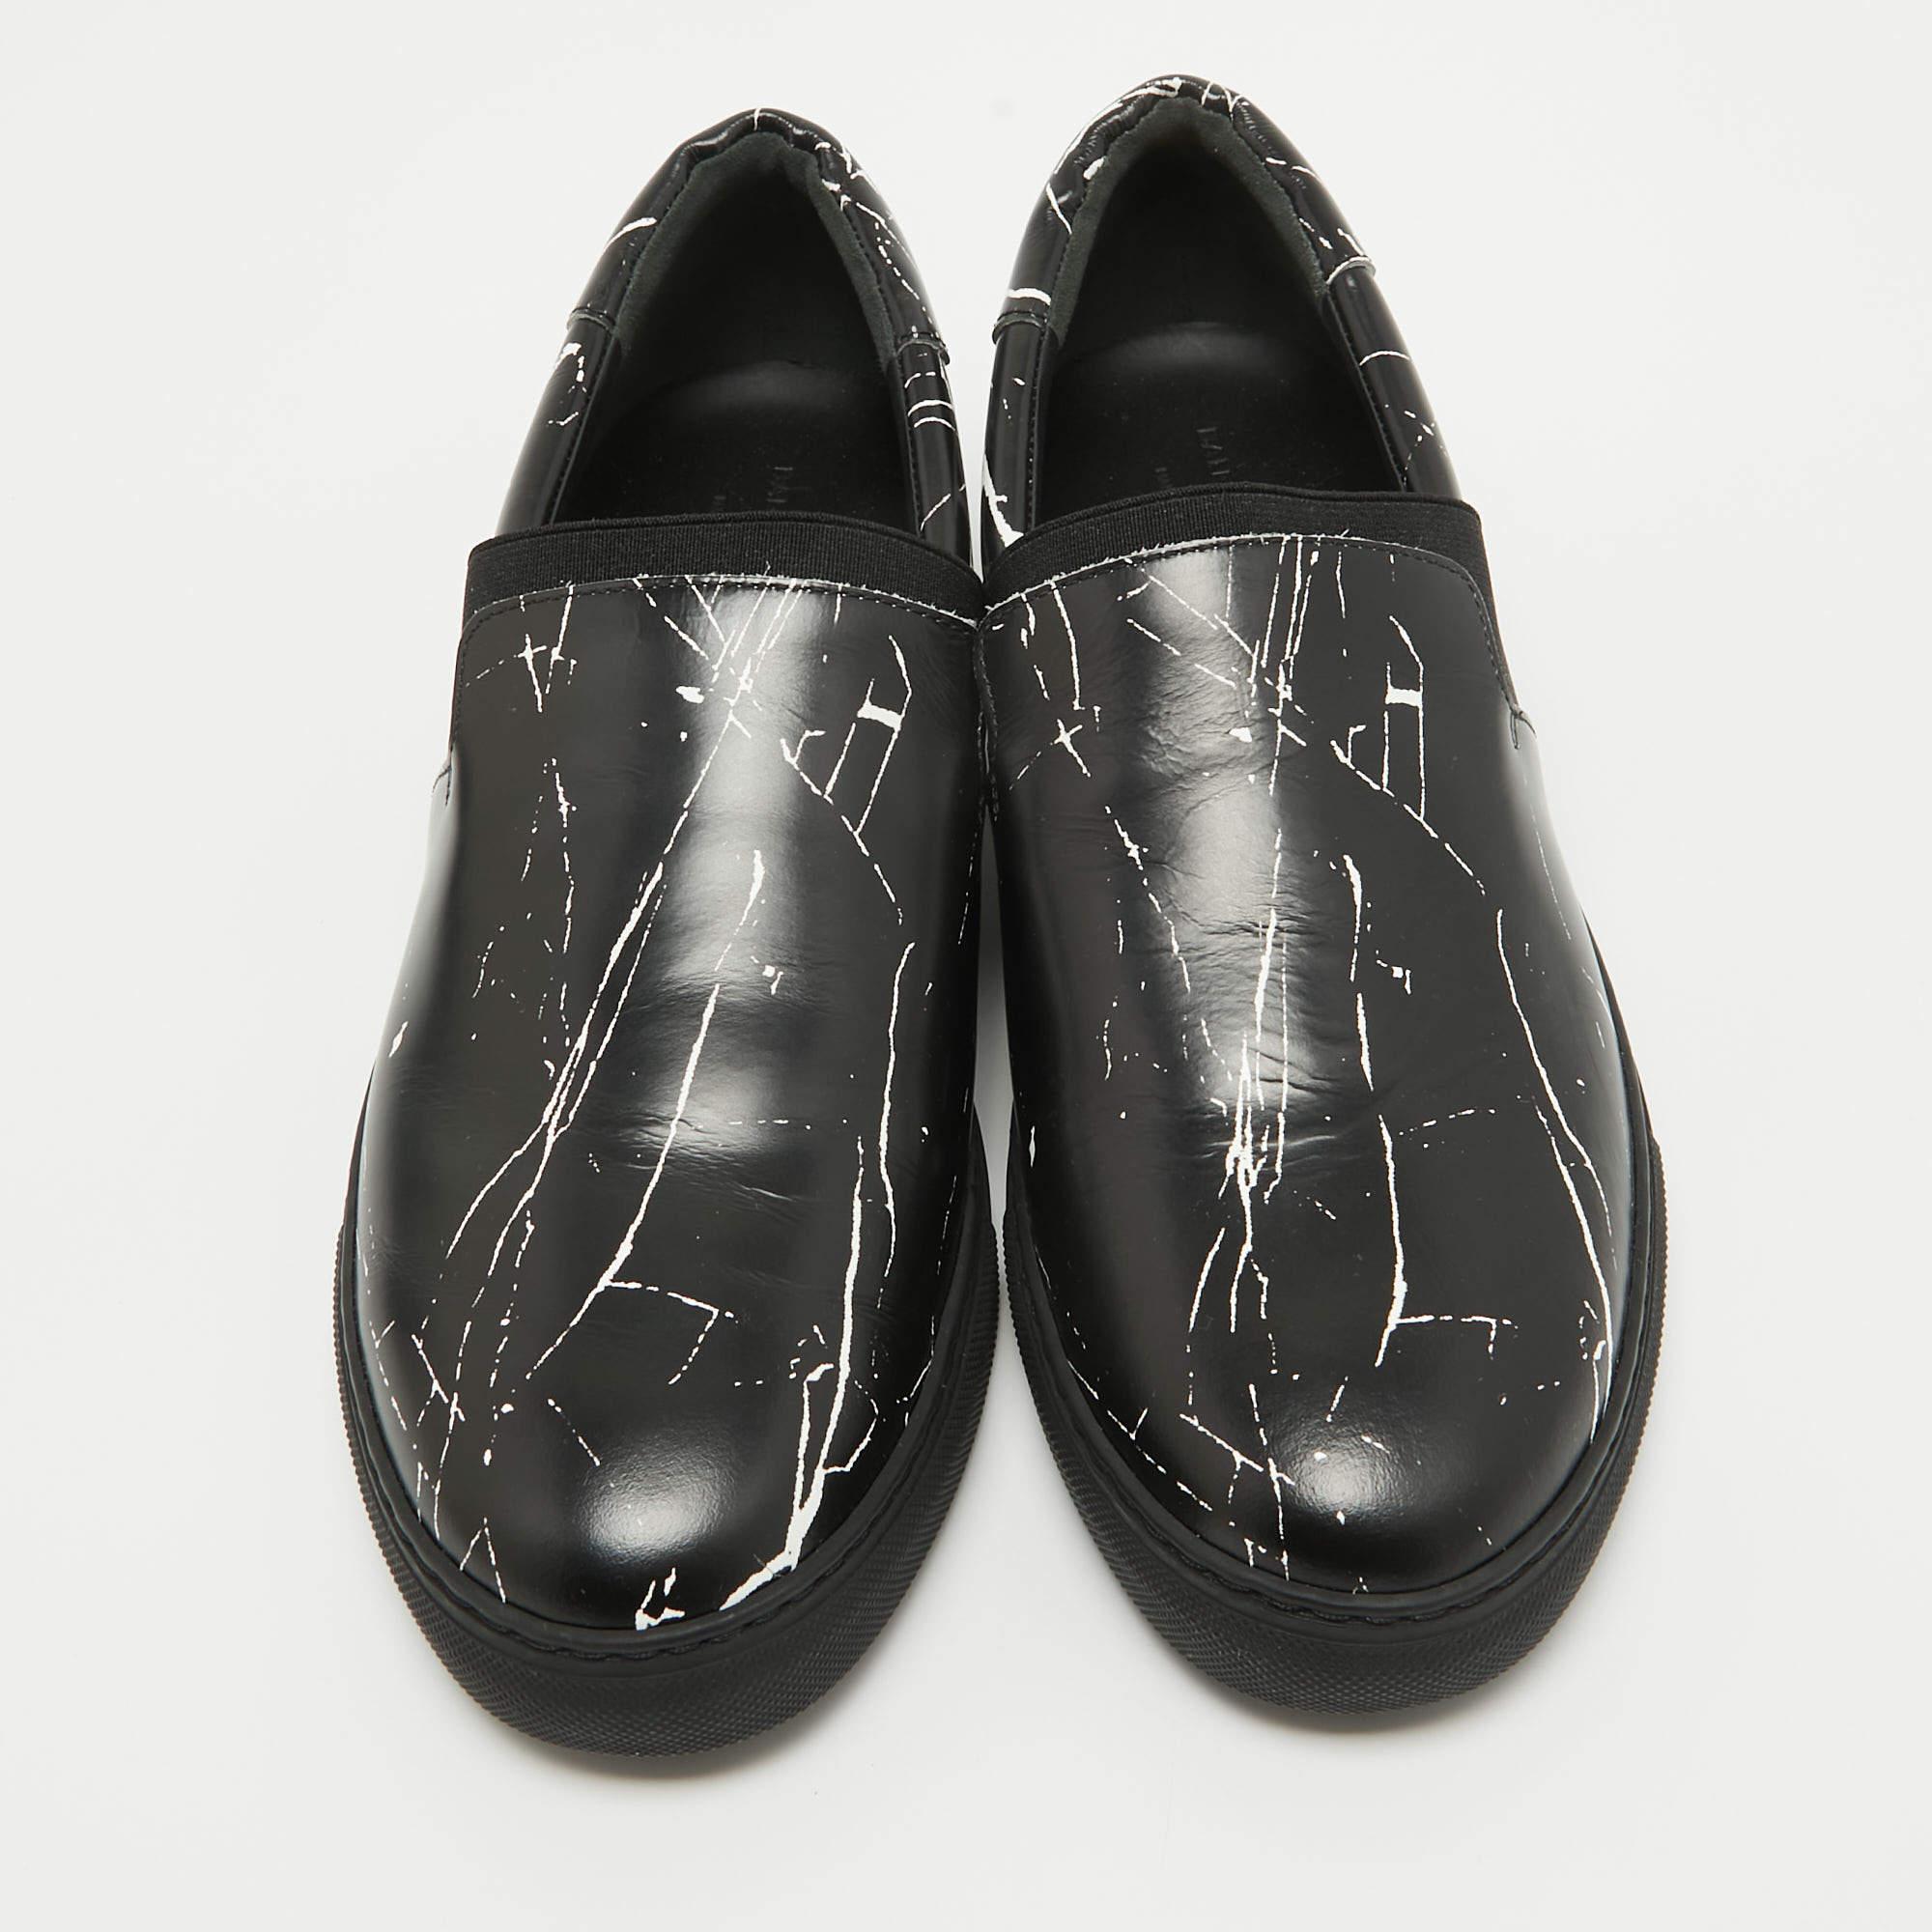 Balenciaga Black Leather Slip On Sneakers Size 40 In Excellent Condition For Sale In Dubai, Al Qouz 2